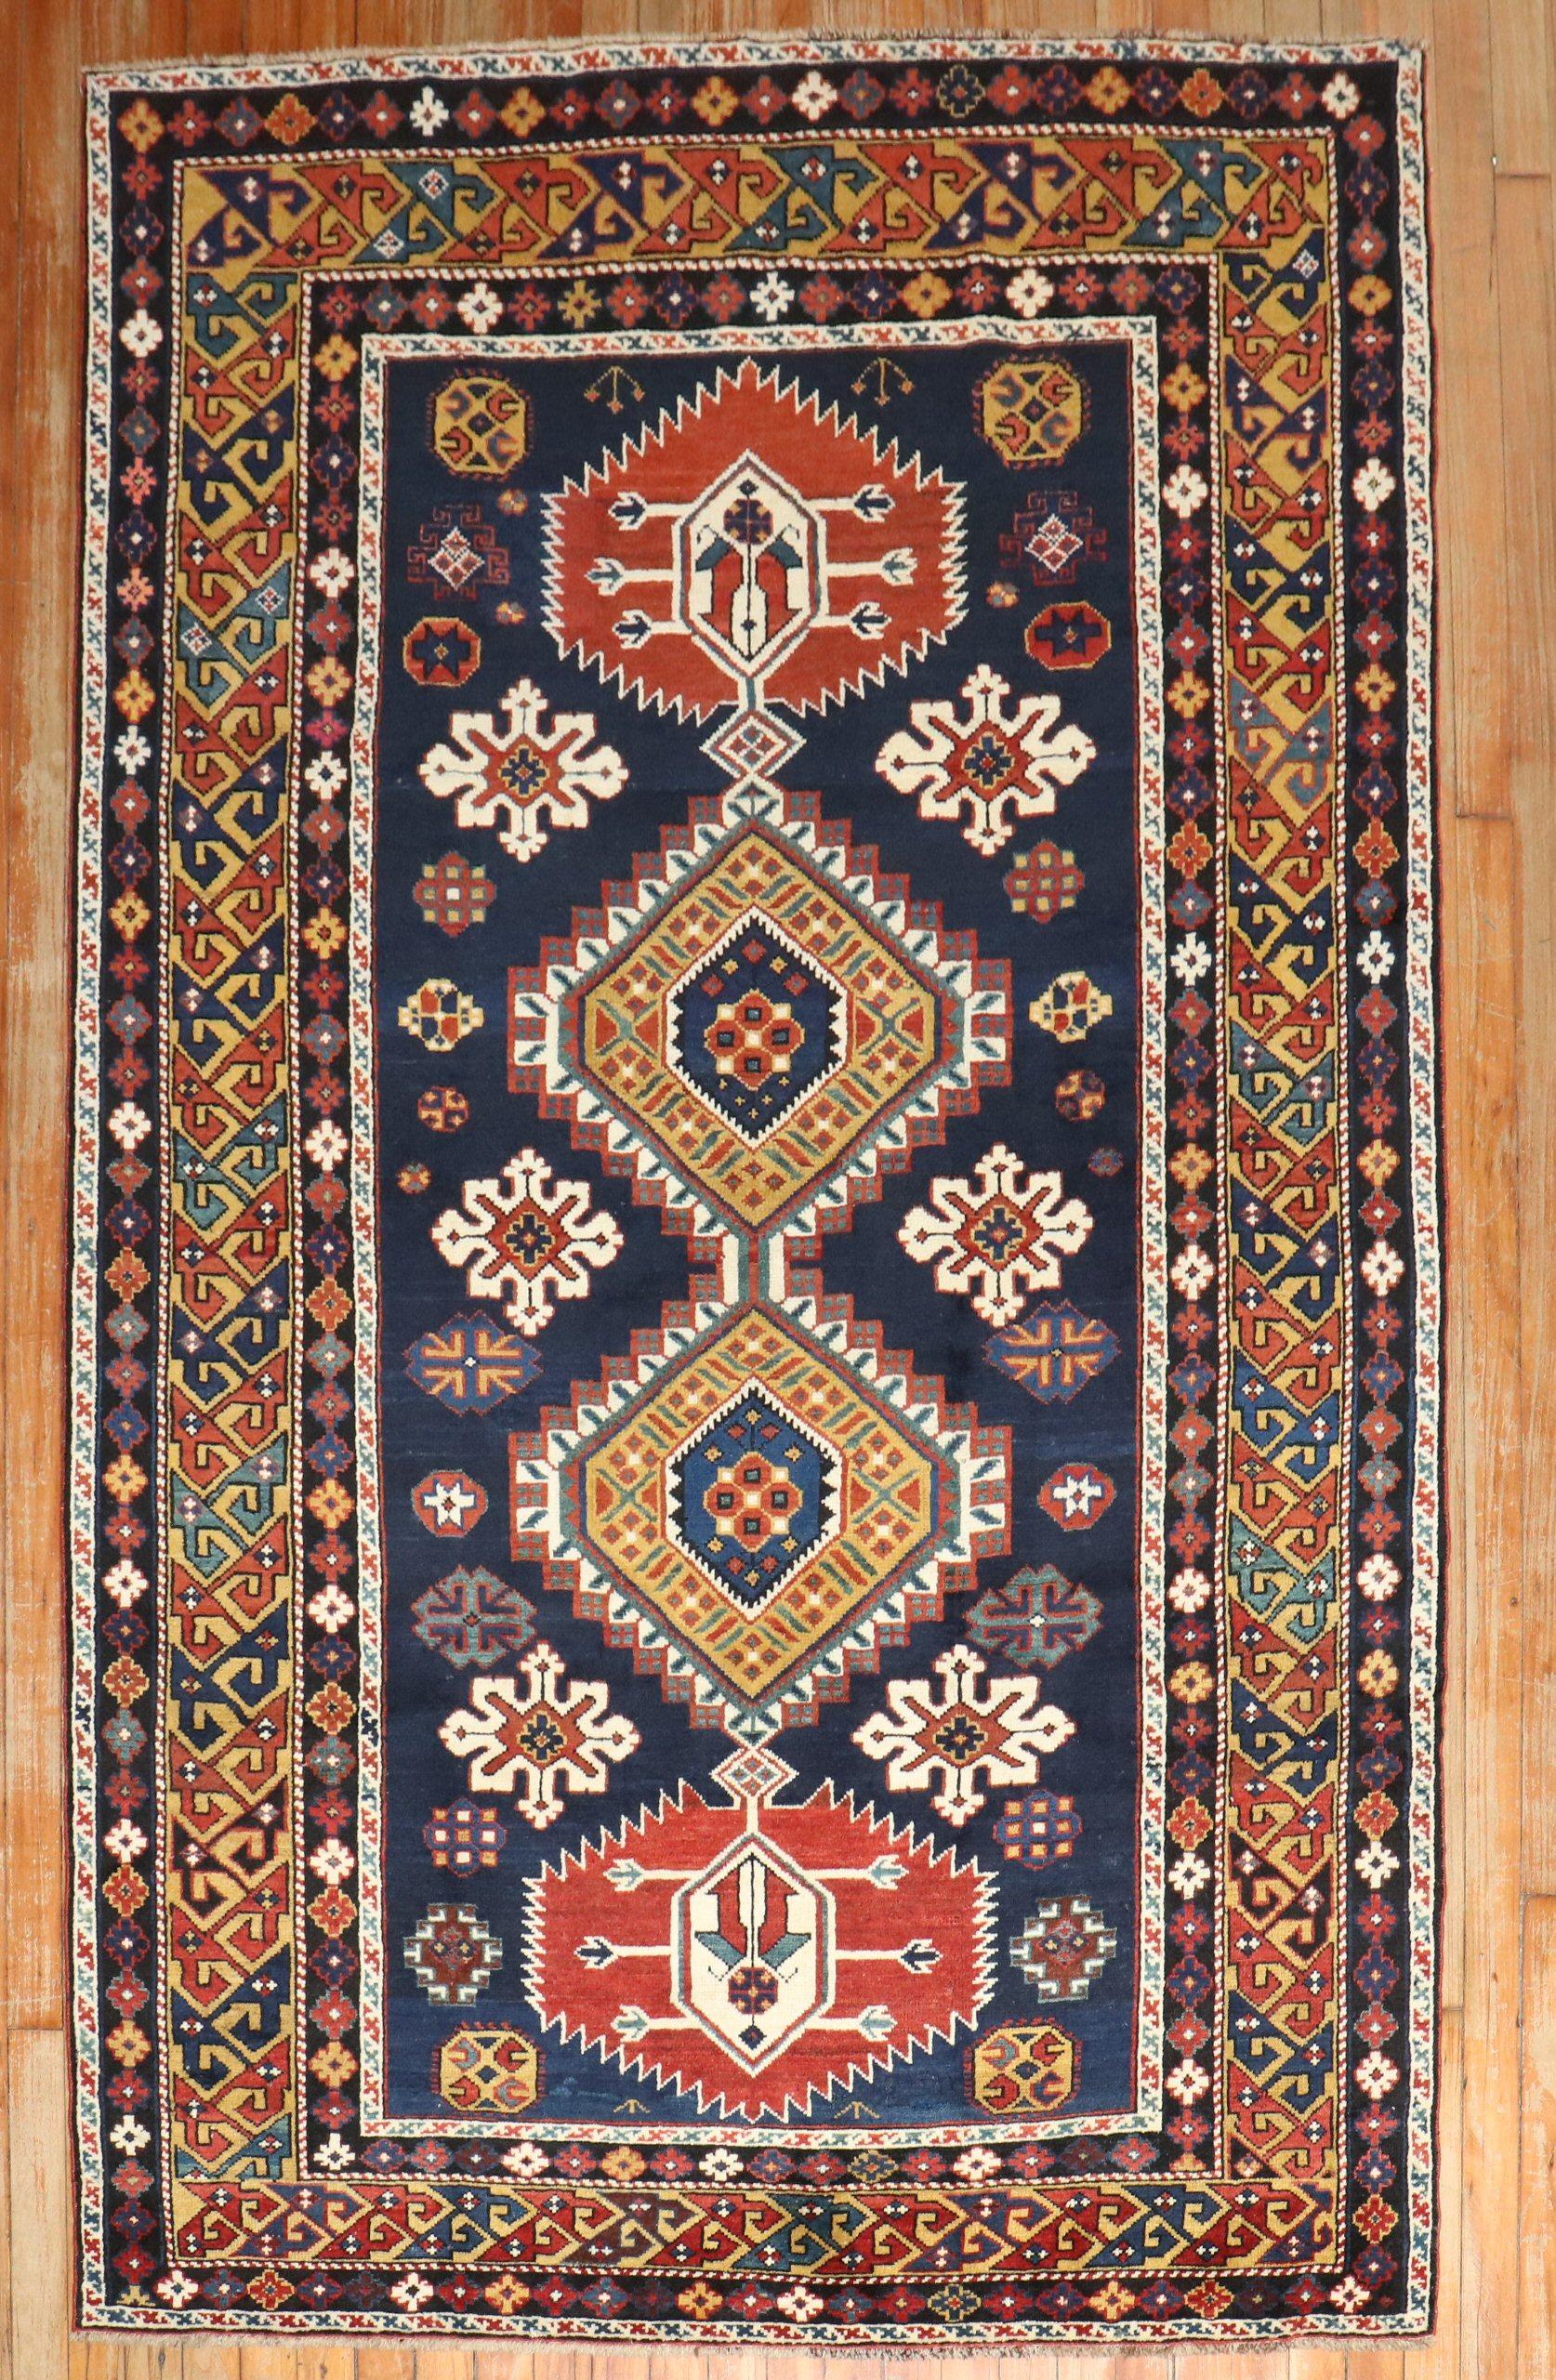 Schirwan-Teppich in Akzentgröße aus dem späten 19.

Einzelheiten
Teppich nein.	j3550
Größe	4' 6